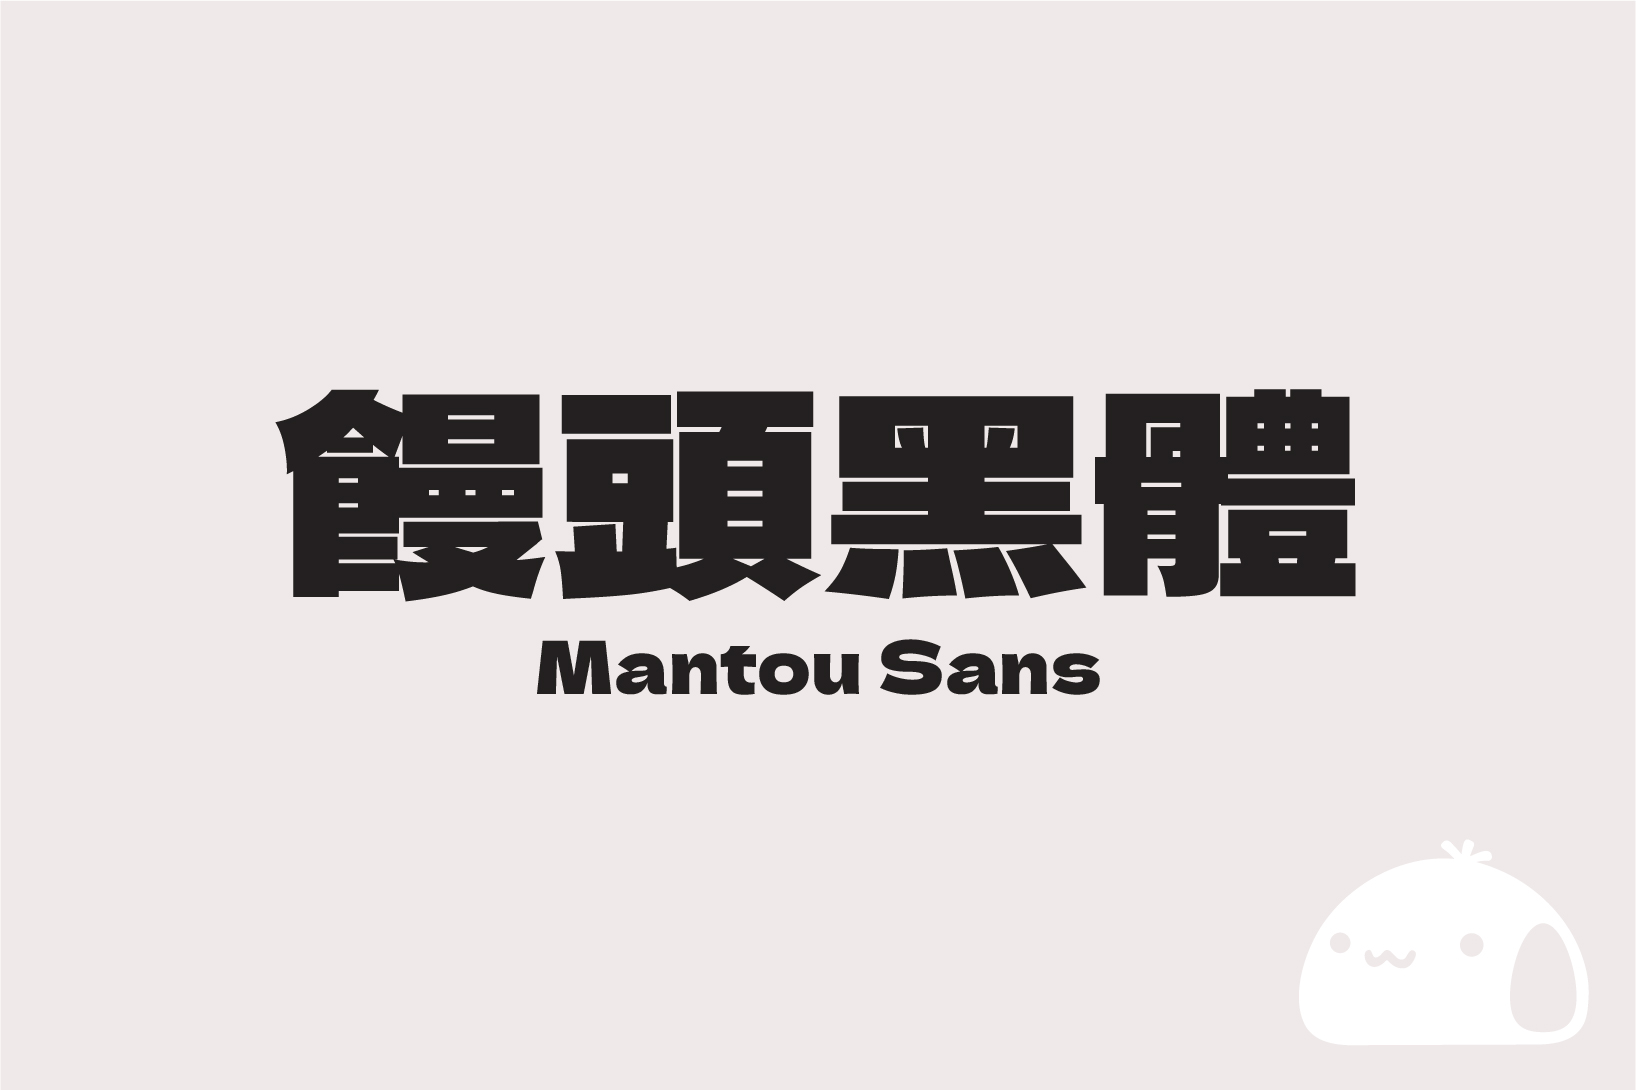 「饅頭黑體 / Mantou Sans」補充日系 Dela Gothic One 黑體字型所缺中文字，開源可商用